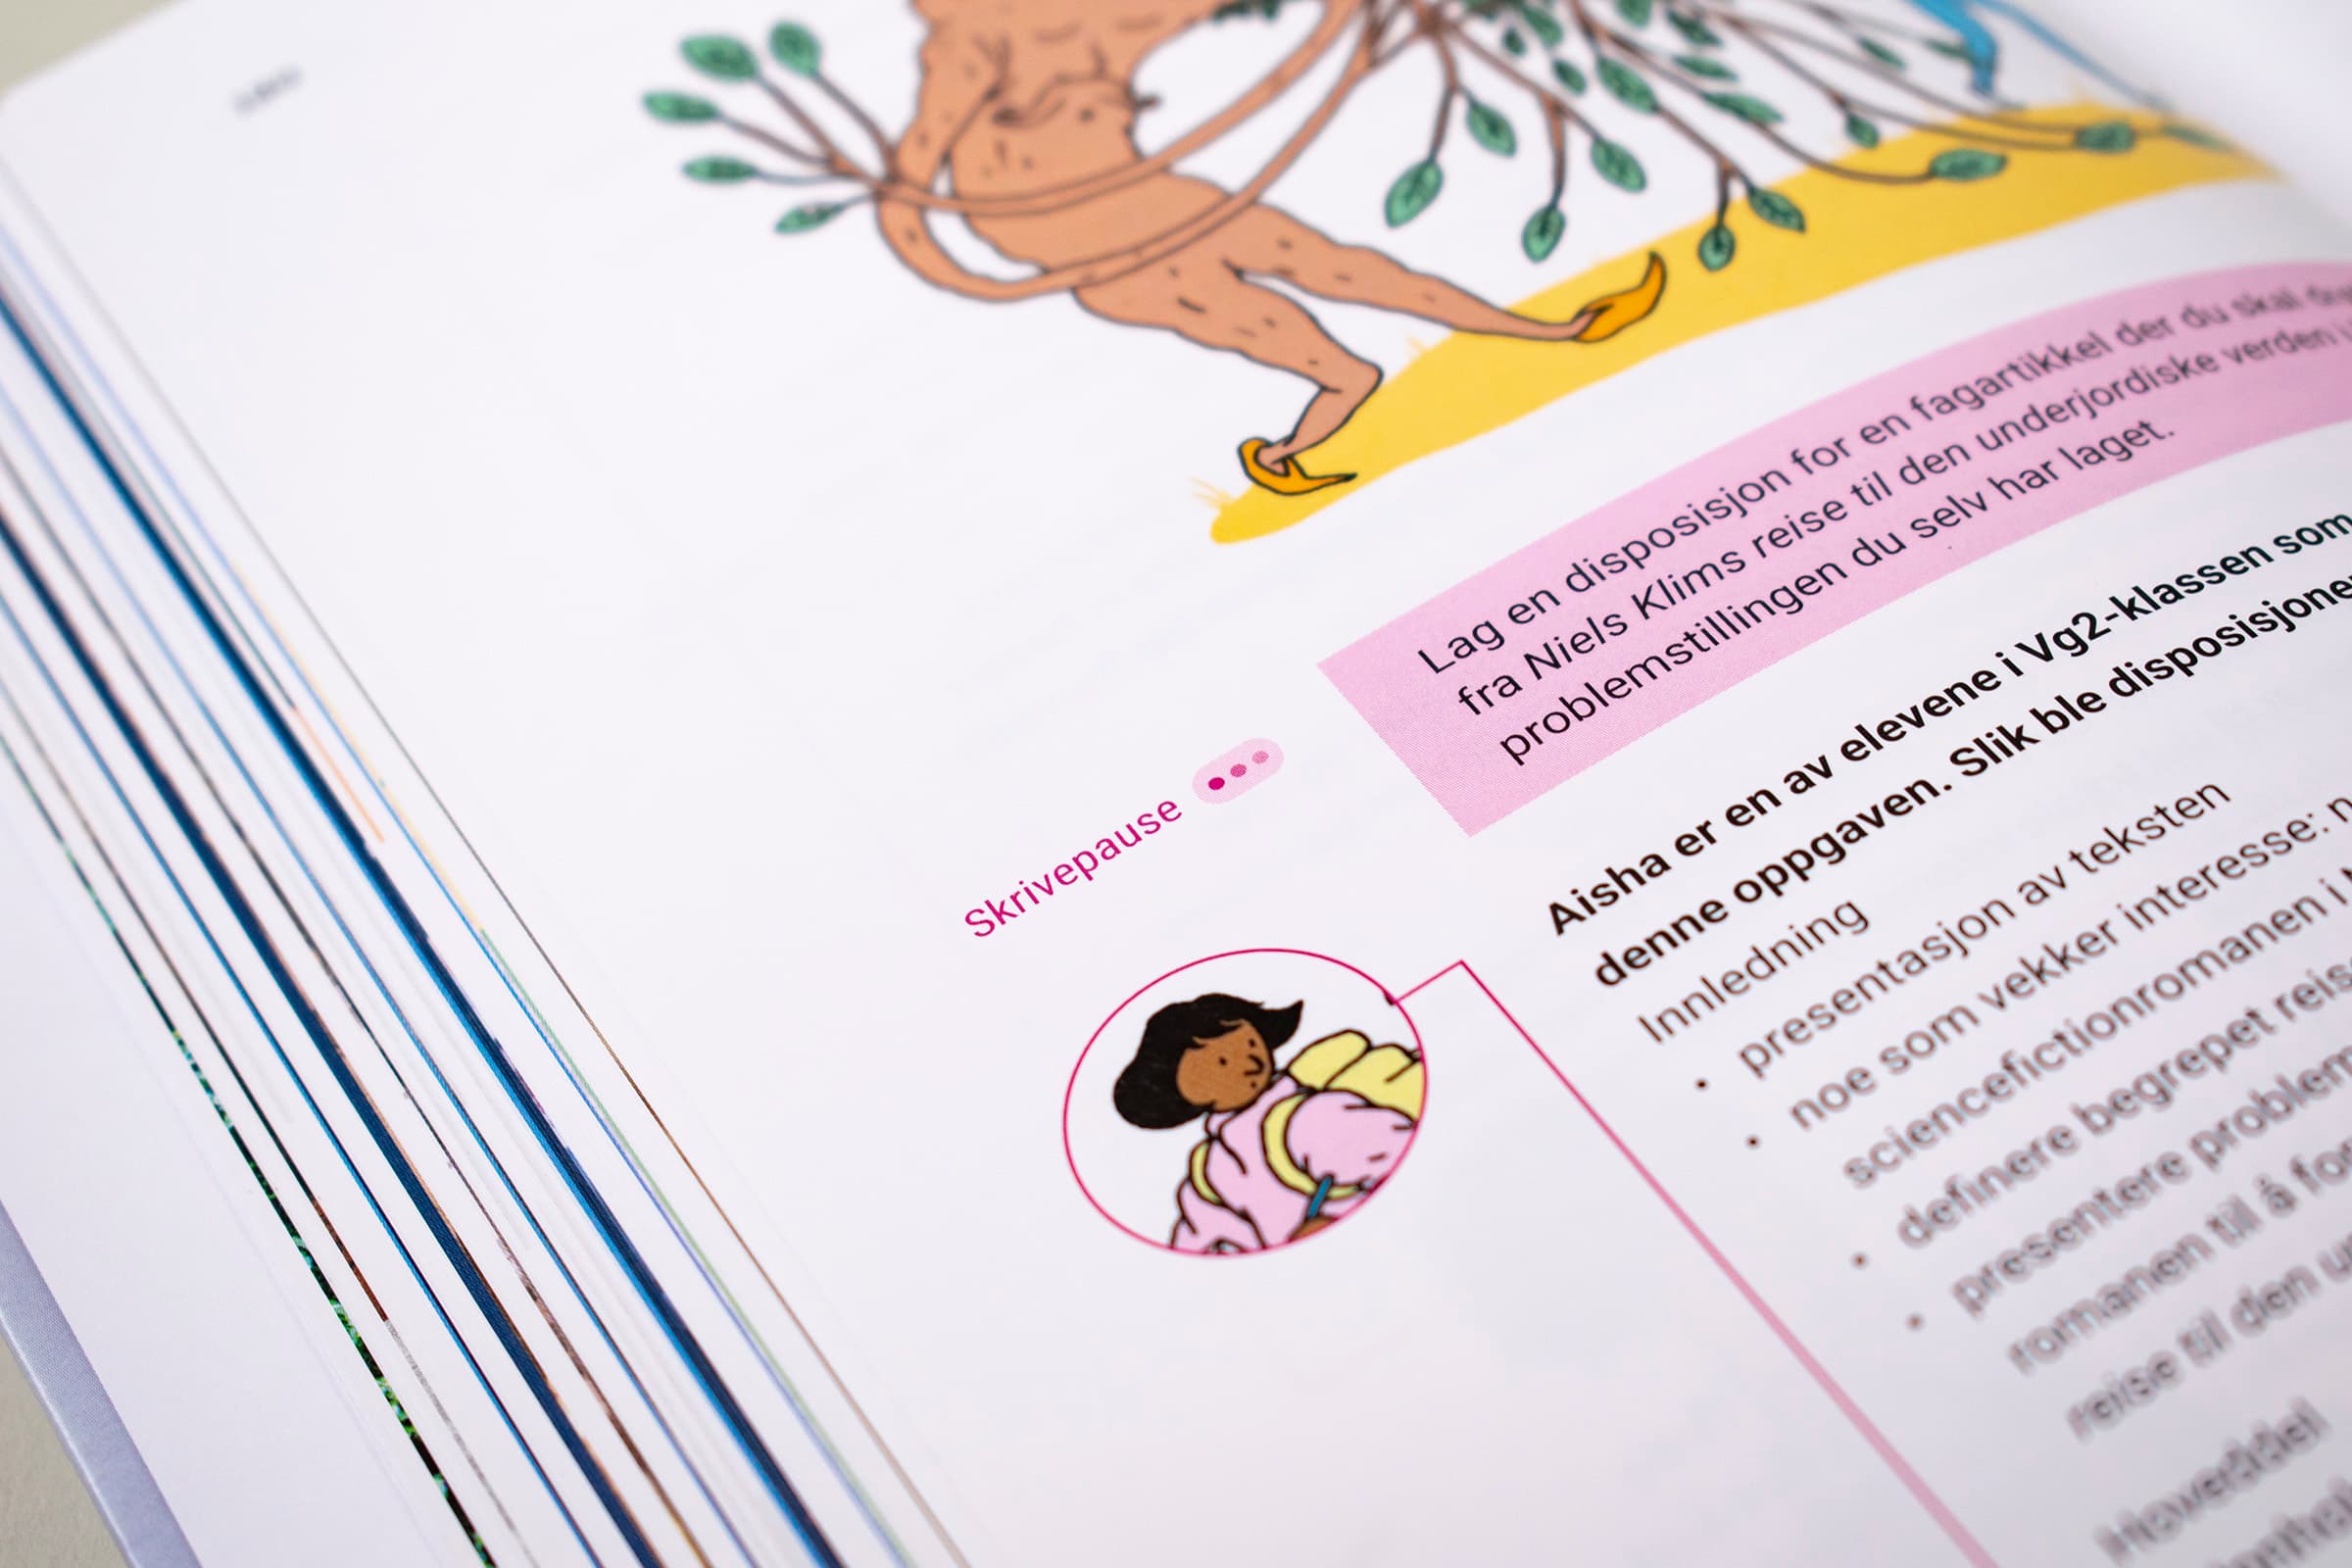 Dette bildet viser skrive-pause ikonet til boken, og en illustrasjon av en jente med skolesekk.